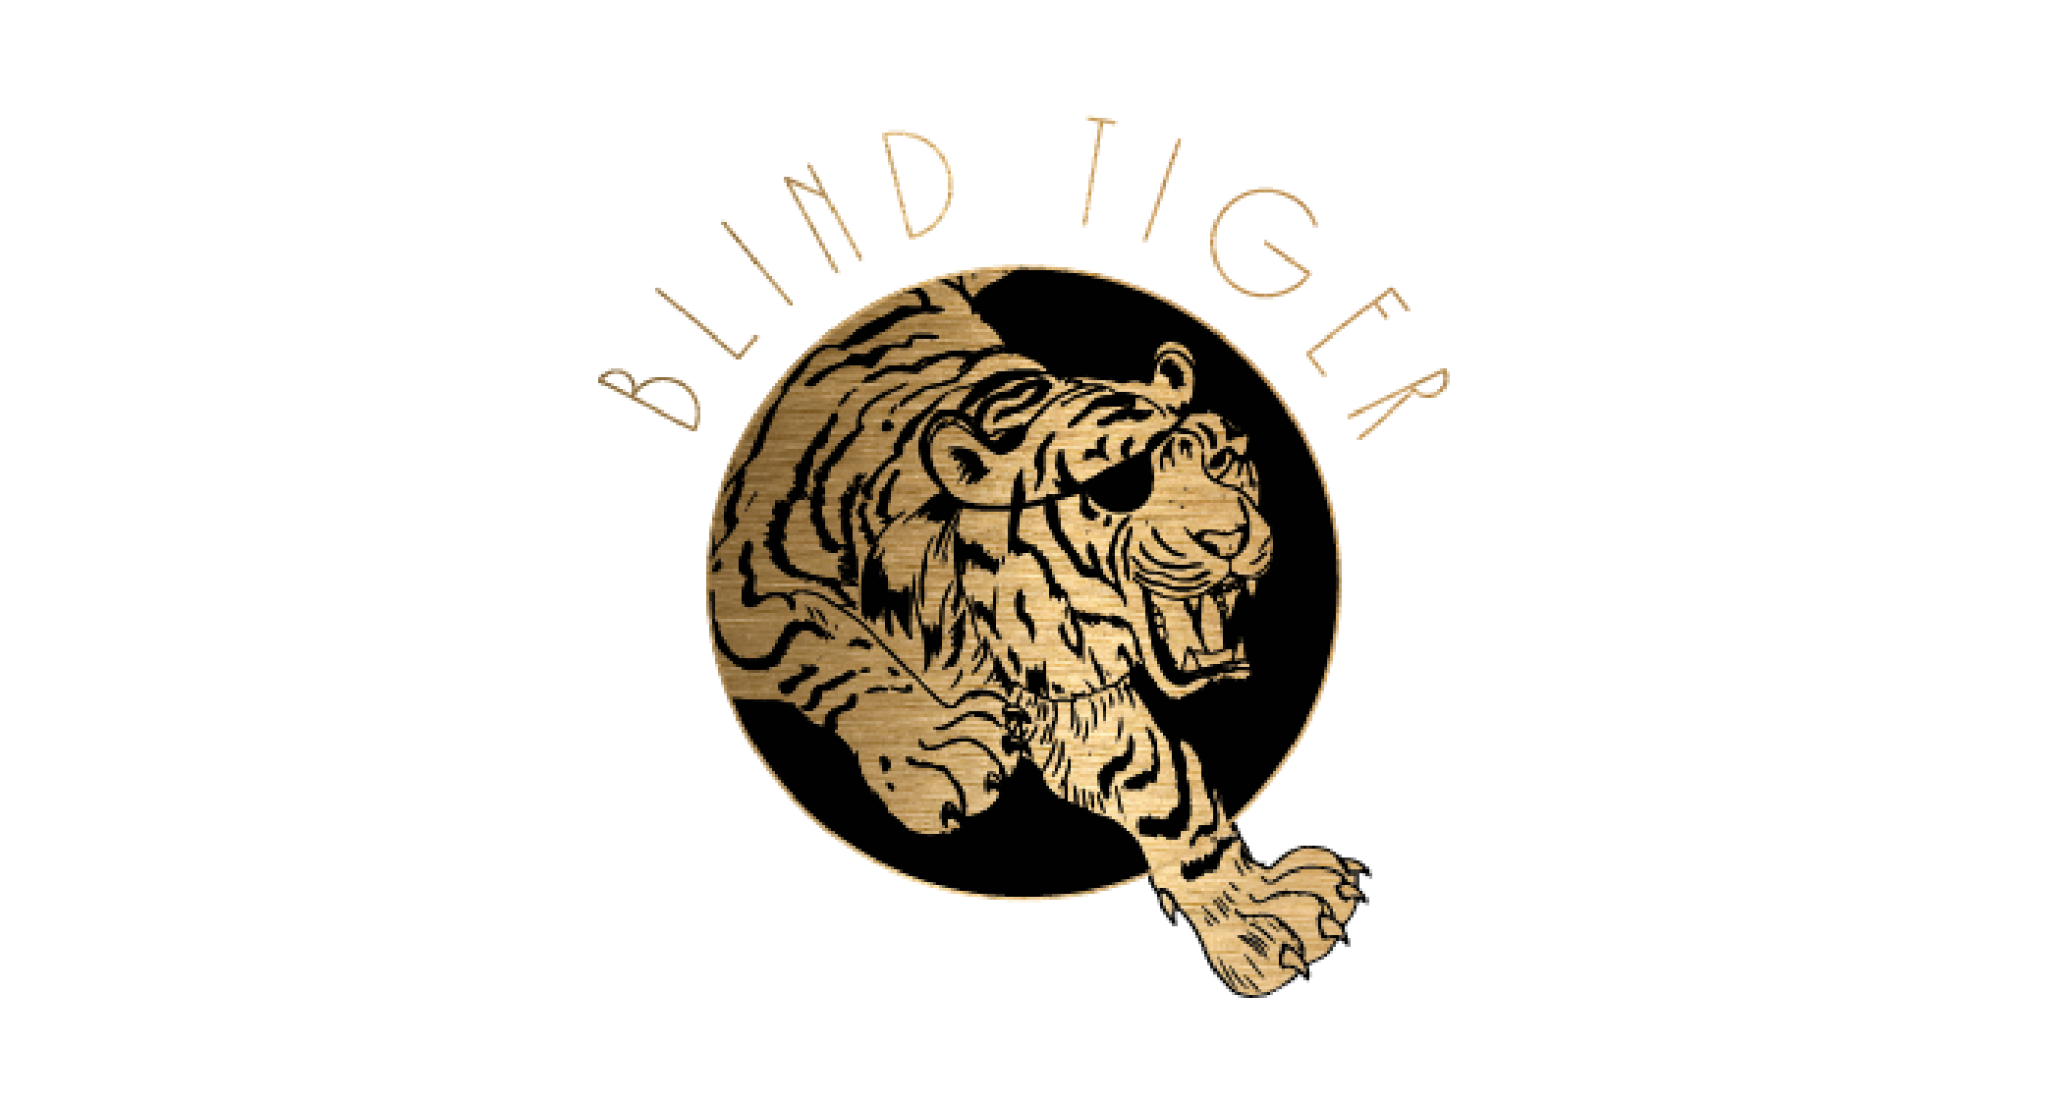 Blind tiger